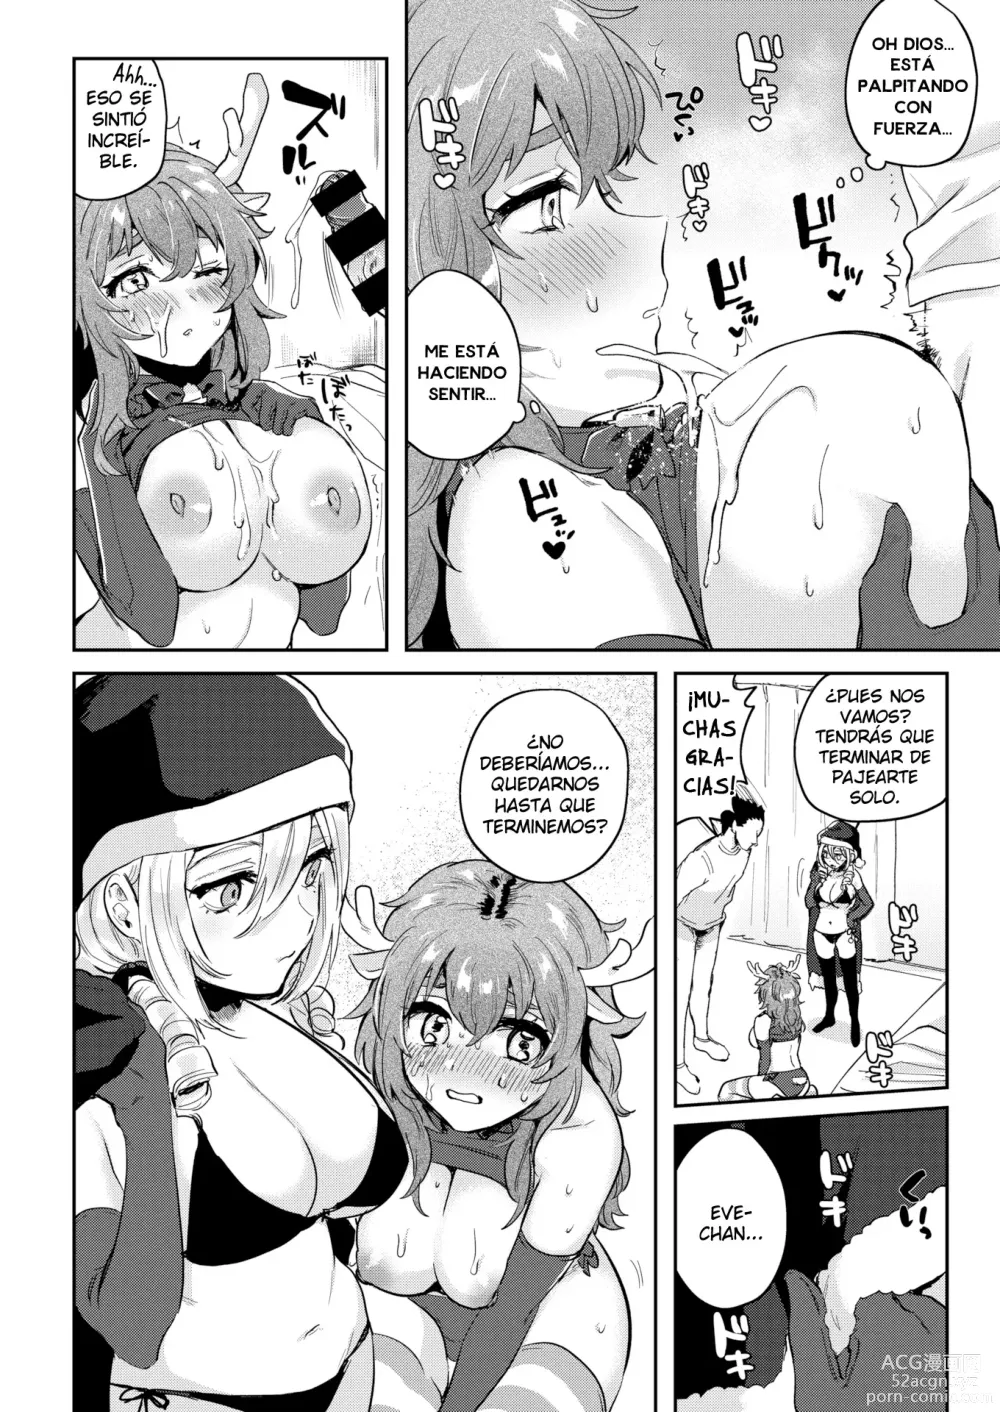 Page 9 of manga Santa claus atrasado